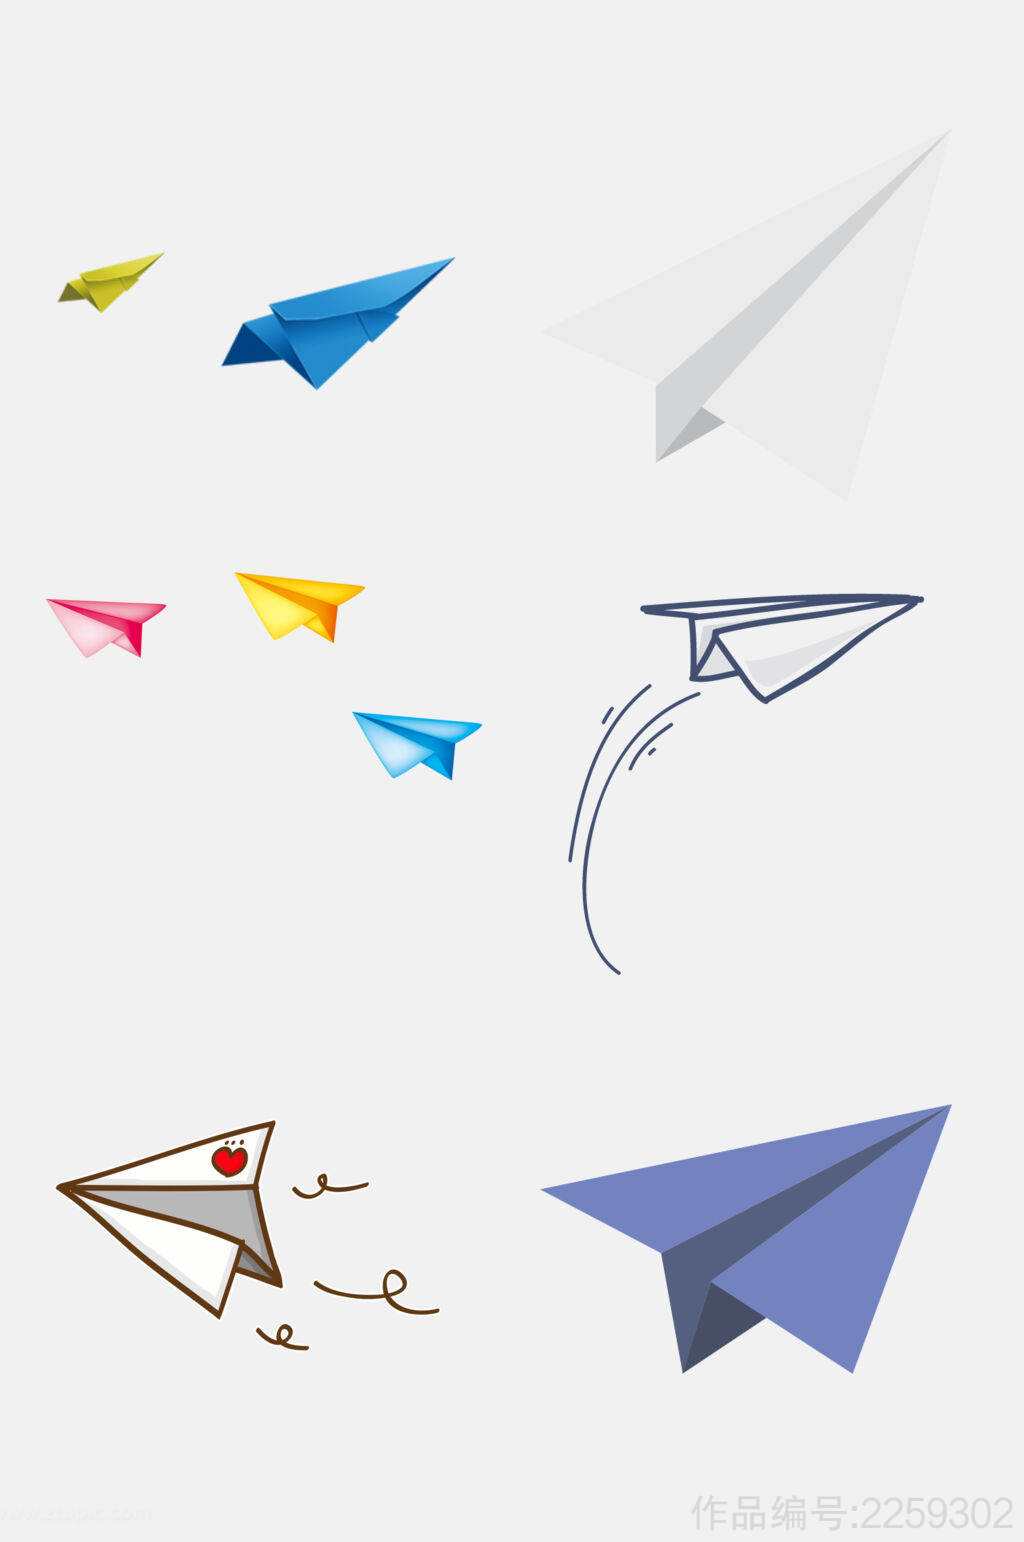 [纸飞机最新版本]纸飞机最新版本下载8282